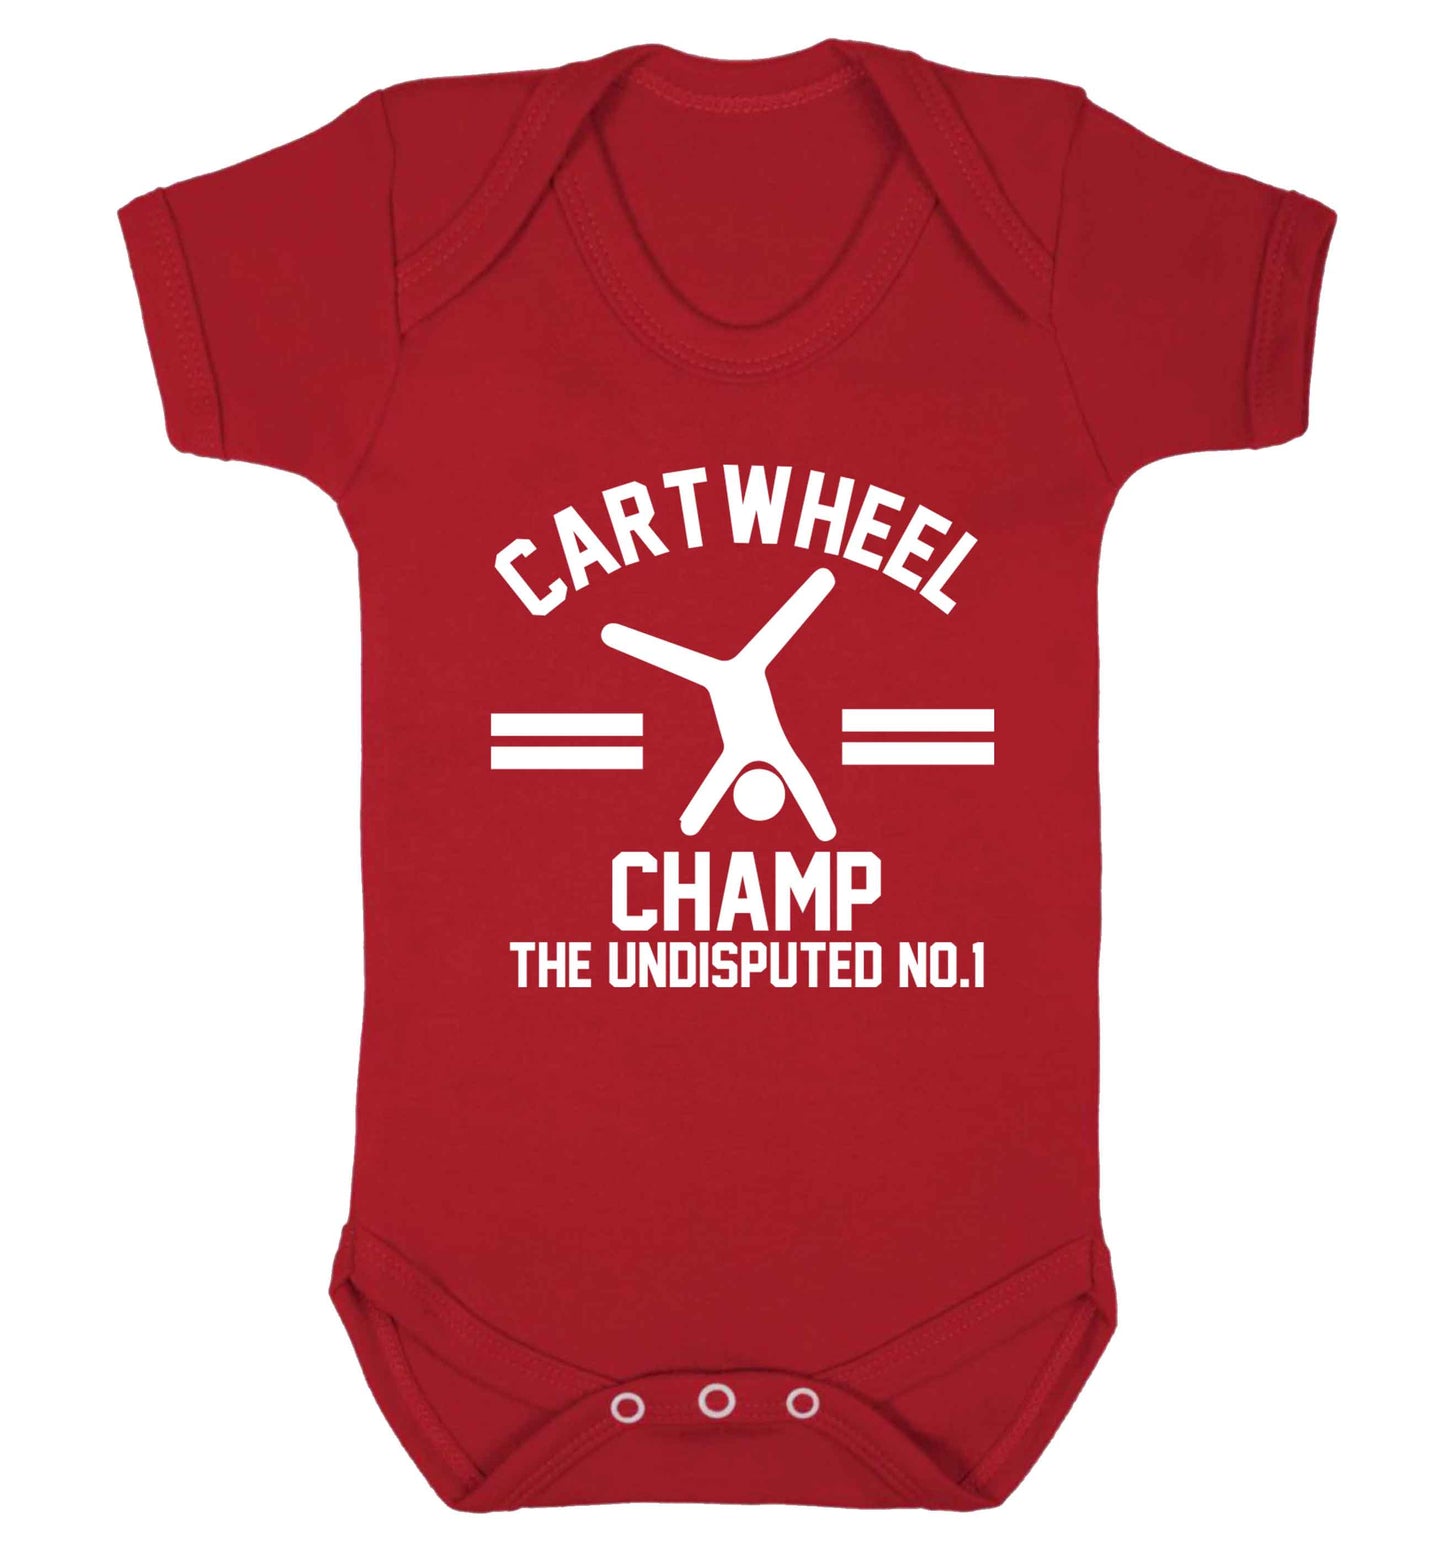 Undisputed cartwheel championship no.1  Baby Vest red 18-24 months